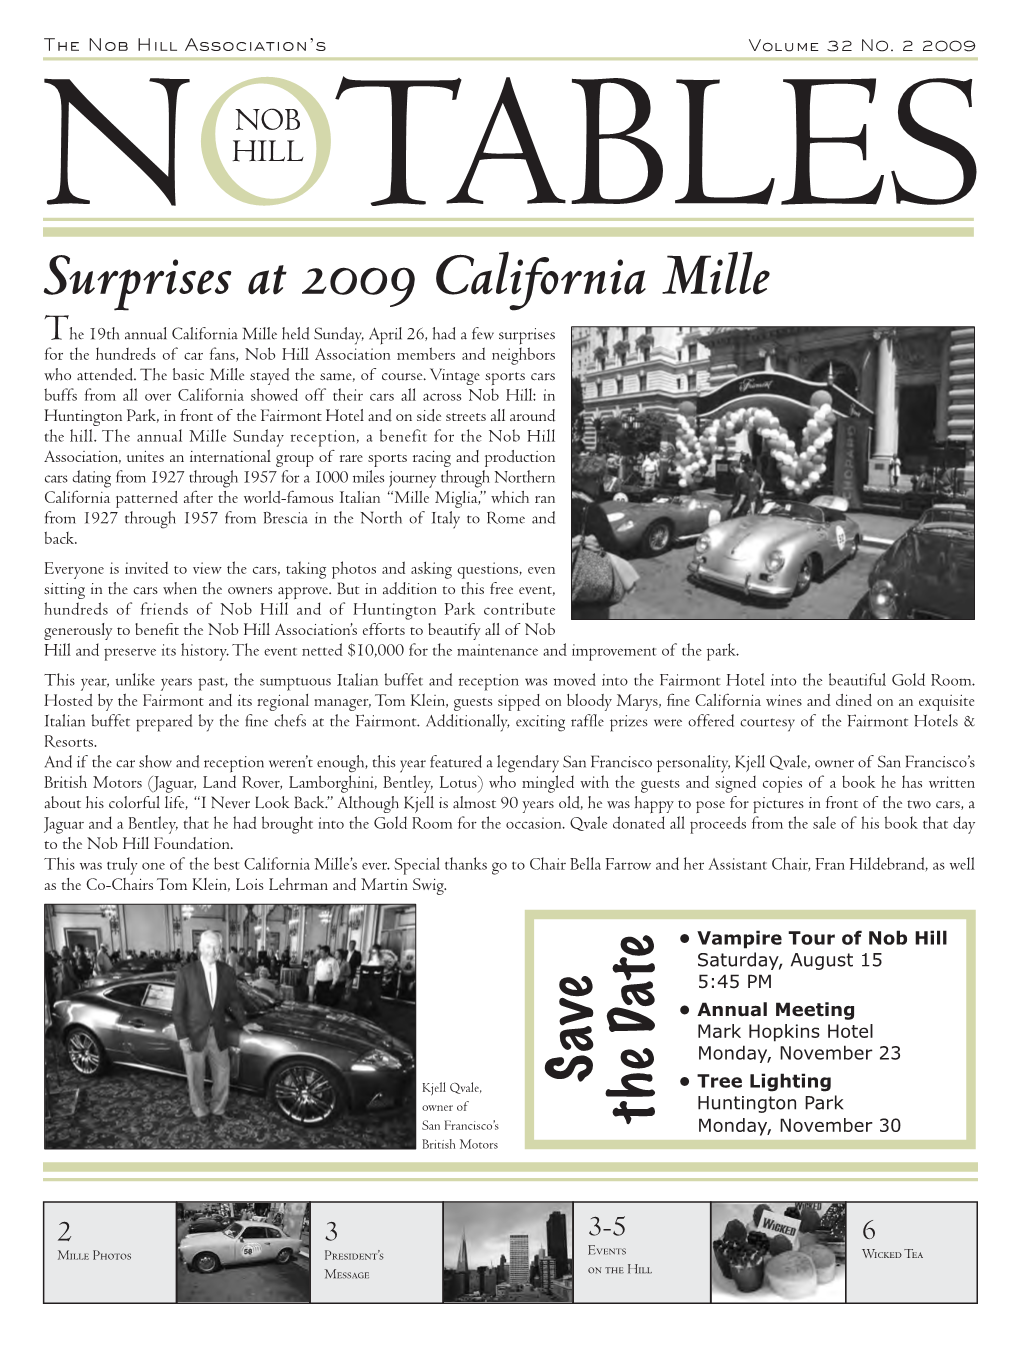 Surprises at 2009 California Mille